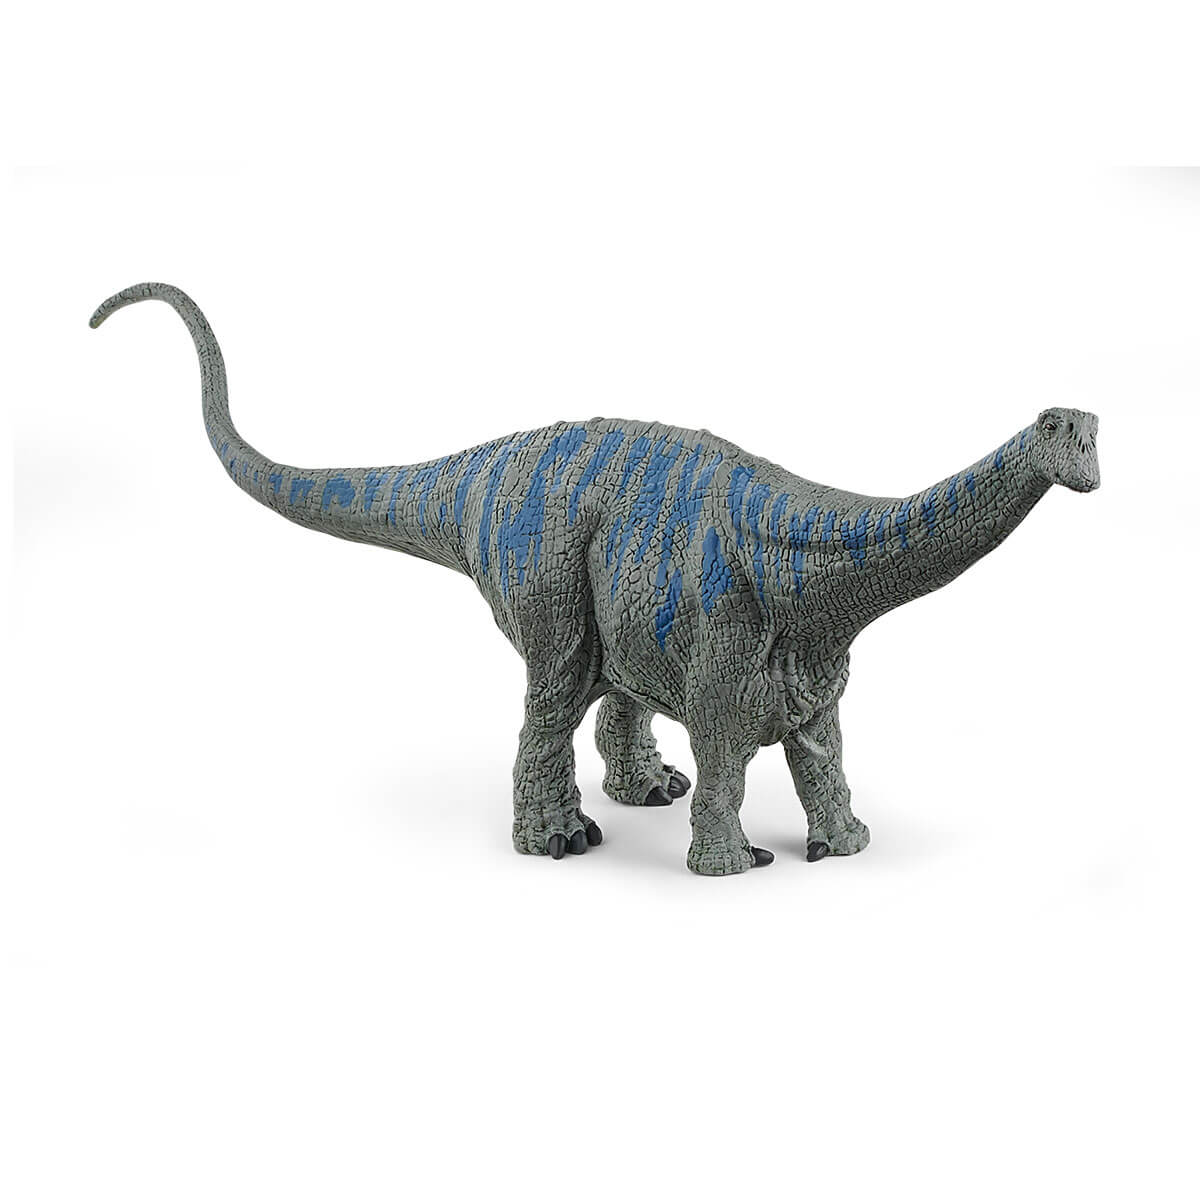 Brontosaurus (Schleich #15027)